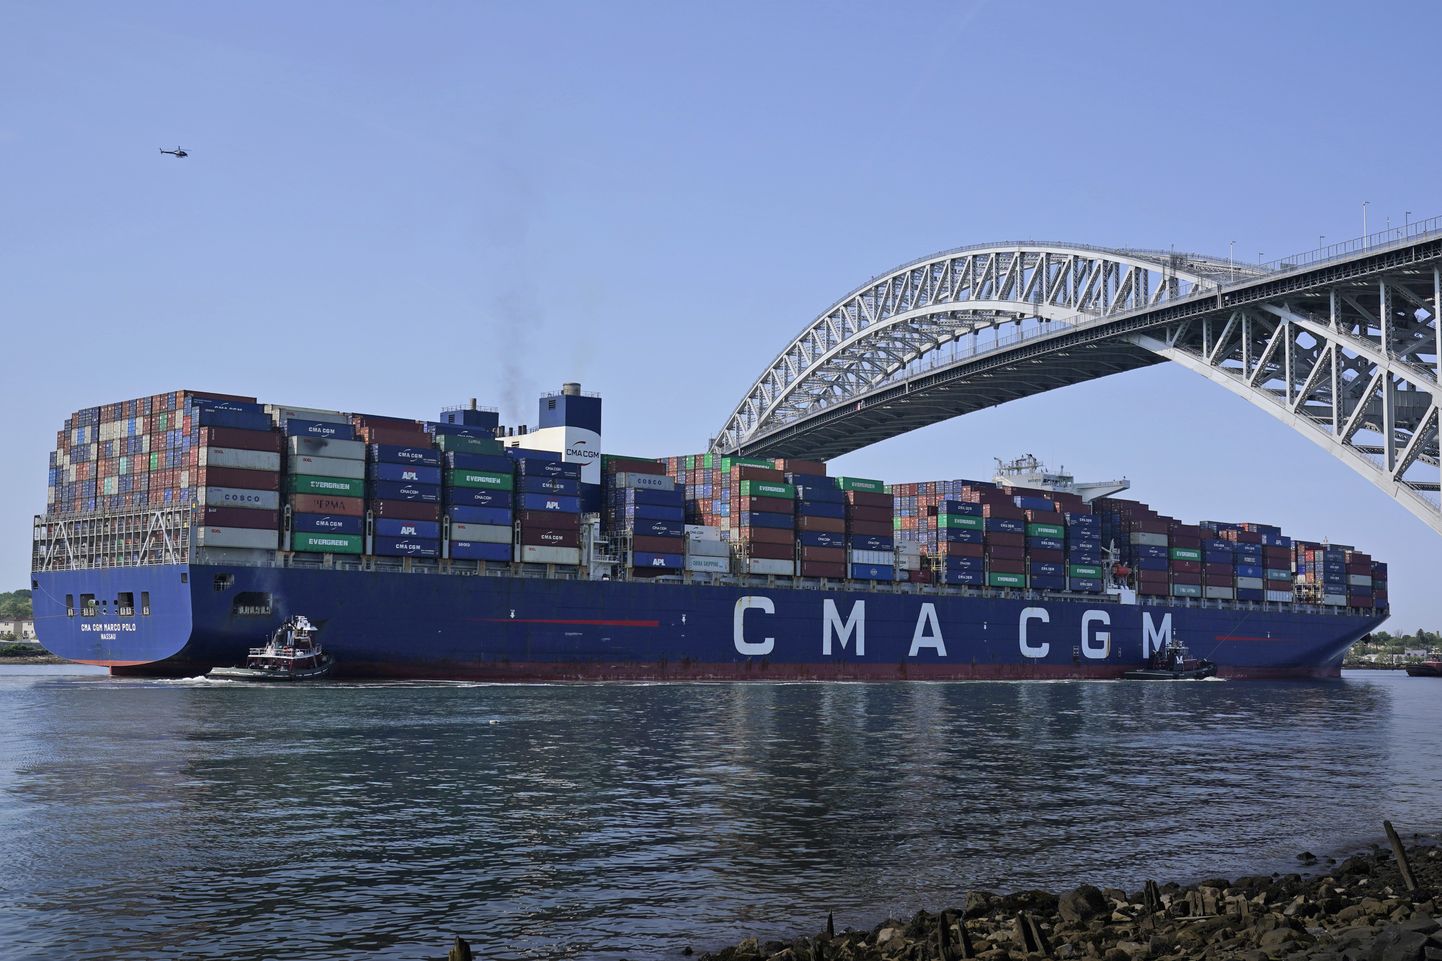 Firma CMA CGM konteinerilaev Marco Polo sõidab läbi kõrgemale tõstetud Bayonne silla alt ning suundub New Jersey sadamasse. Miljardeid maksma läinud silla kõrgemaks ehitamise projekt võeti ette spetsiaalselt selleks, et võimaldada suurematel konteinerilaevadel New Yorgi piirkonna sadamatesse siseneda.